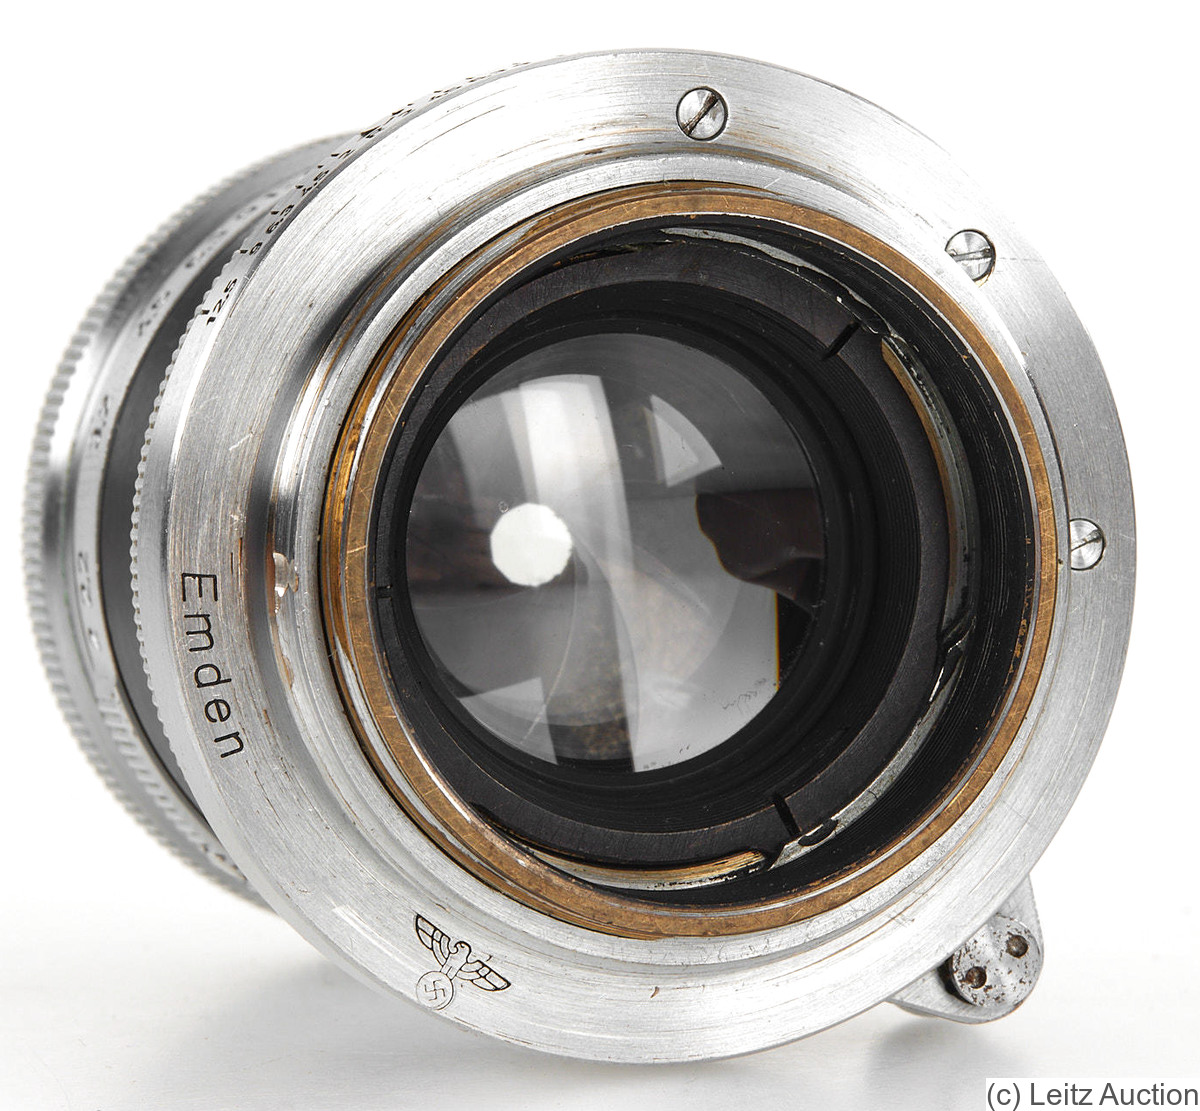 Leitz: 50mm (5cm) f2 Summitar 'Emden' (SM) camera